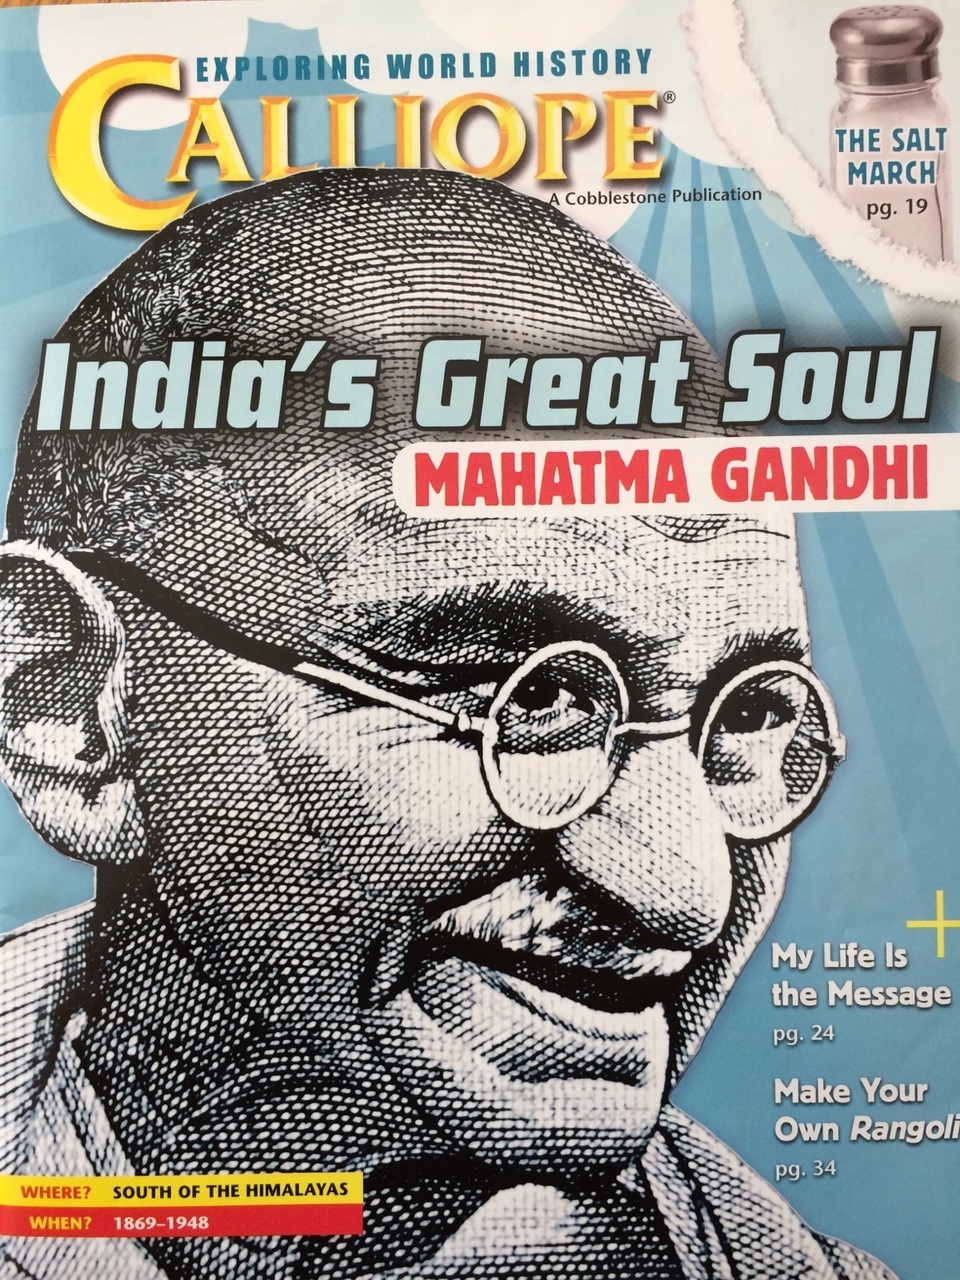 "Gandhi's Spinning Wheel"